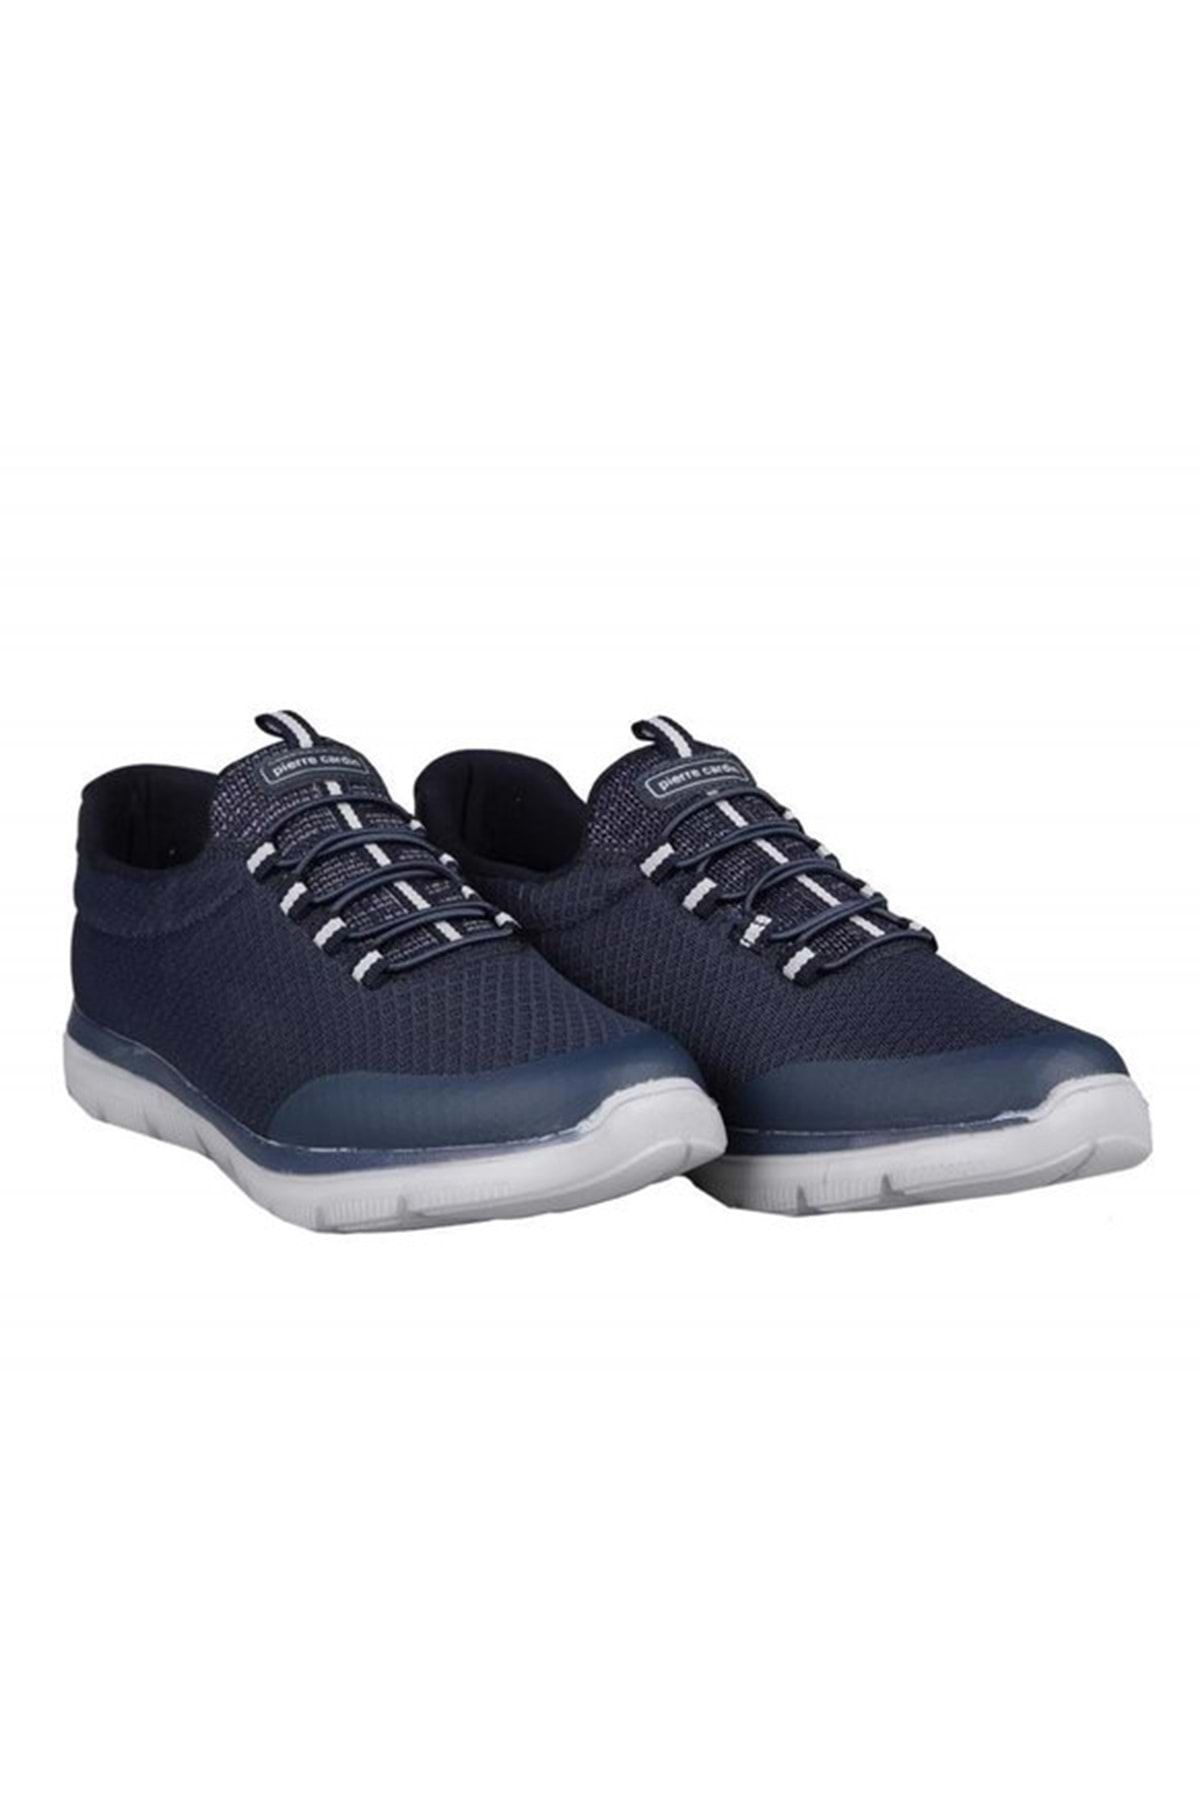 Pierre Cardin Pc-31155 Erkek Sneaker Spor Ayakkabı - Lacivert - 41